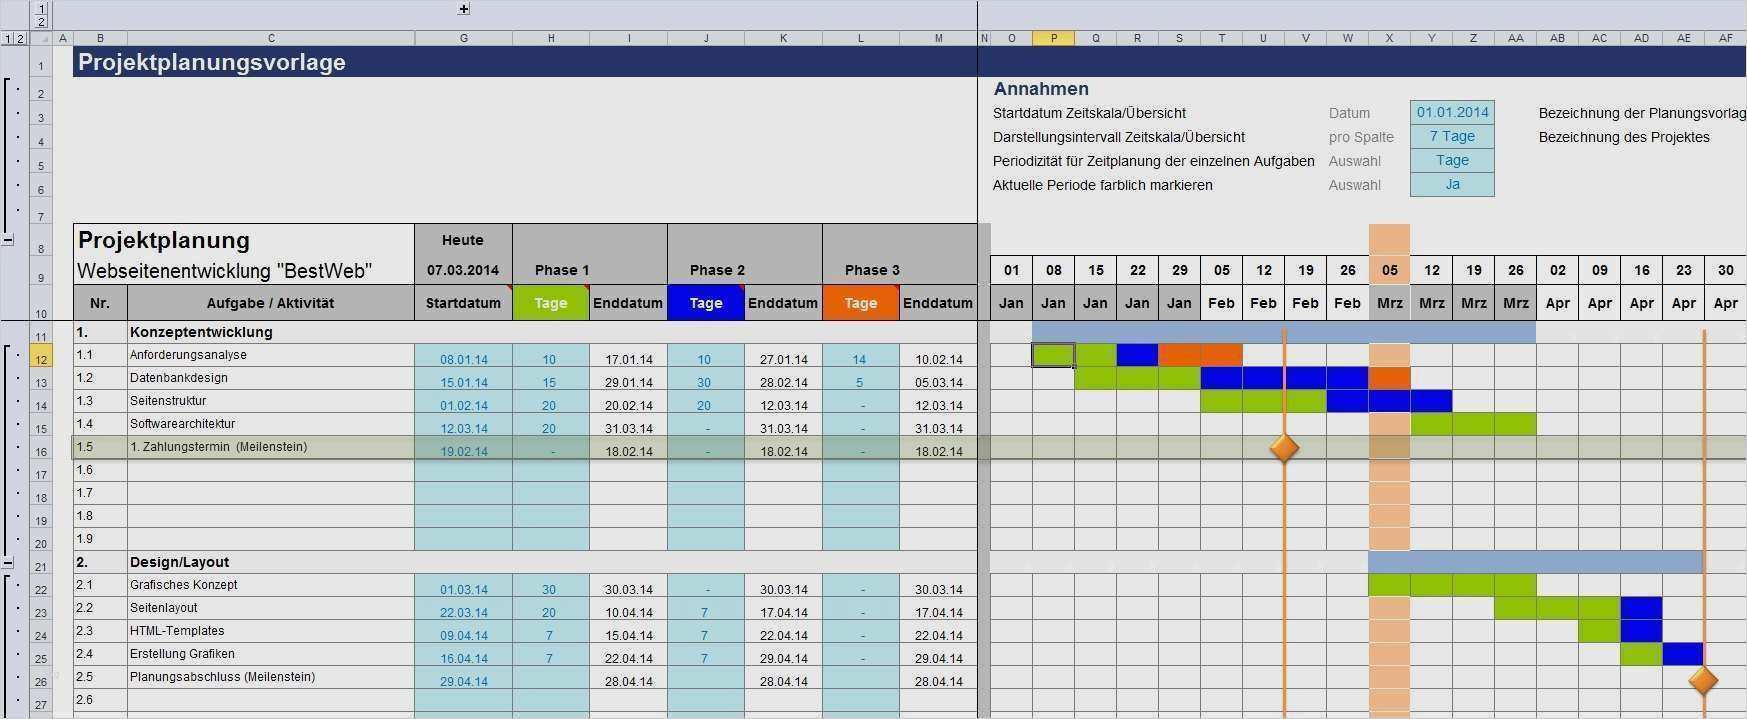 22 Grossartig Microsoft Excel Vorlagen Stilvoll Ebendiese Konnen Anpassen Fur Ihre Erstaunlich In 2020 Excel Vorlage Vorlagen Lebenslauf Vorlagen